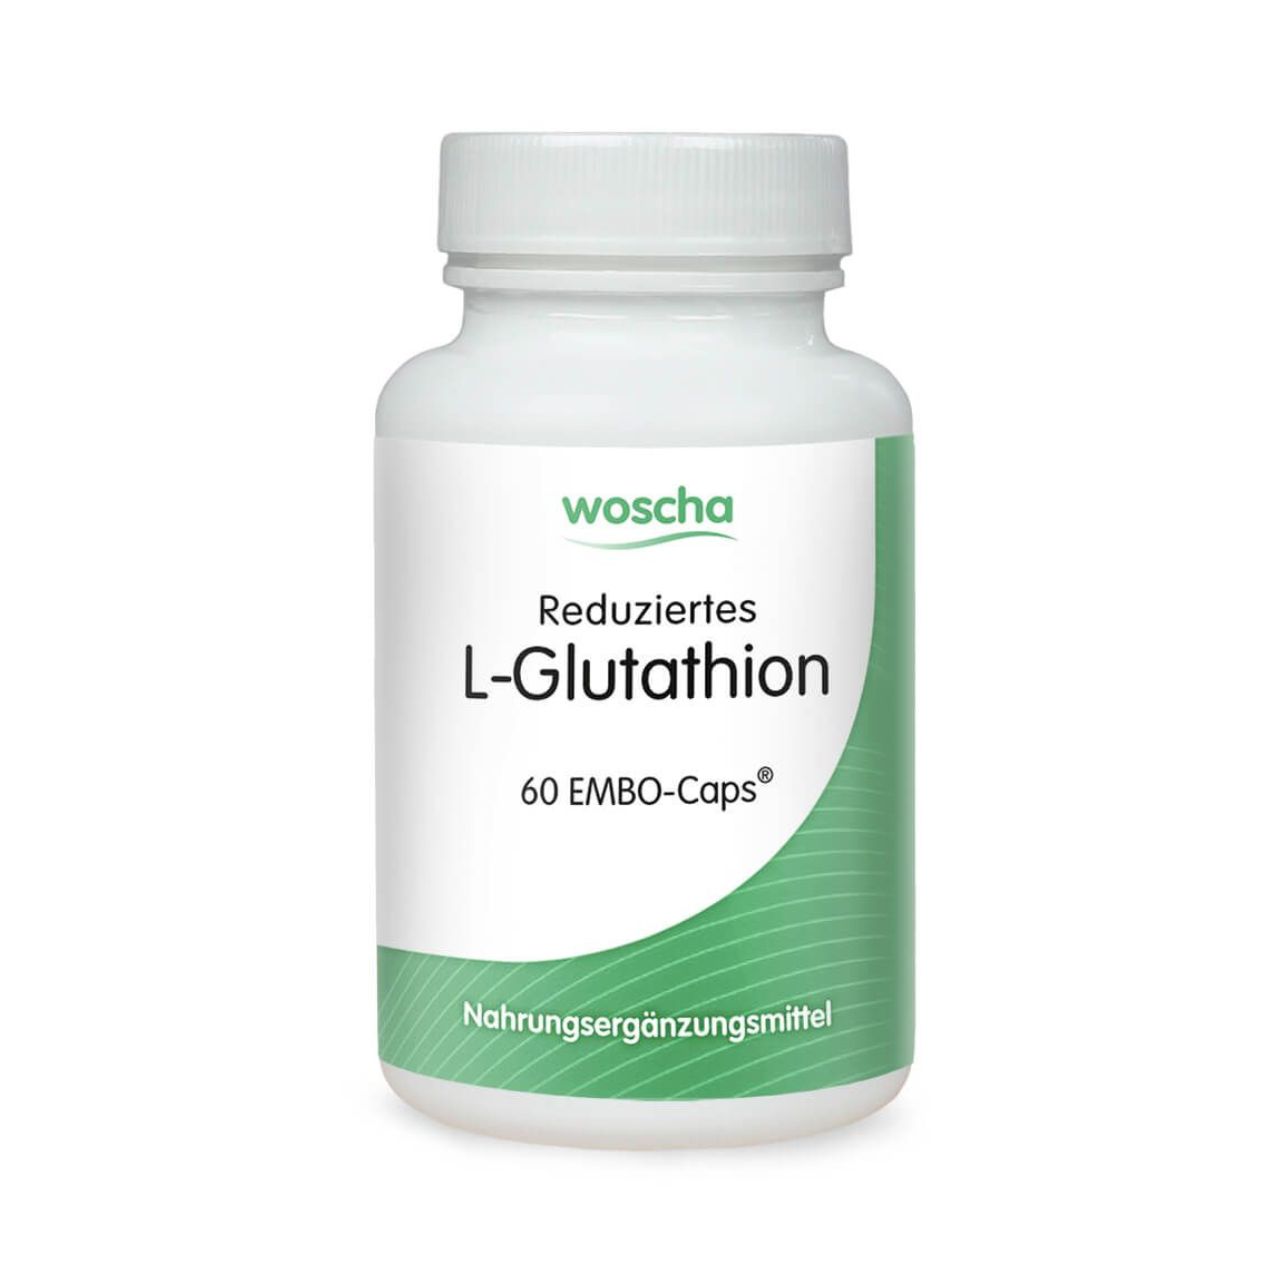 Reduziertes L-Glutathion, 60 EMBO-CAPS®